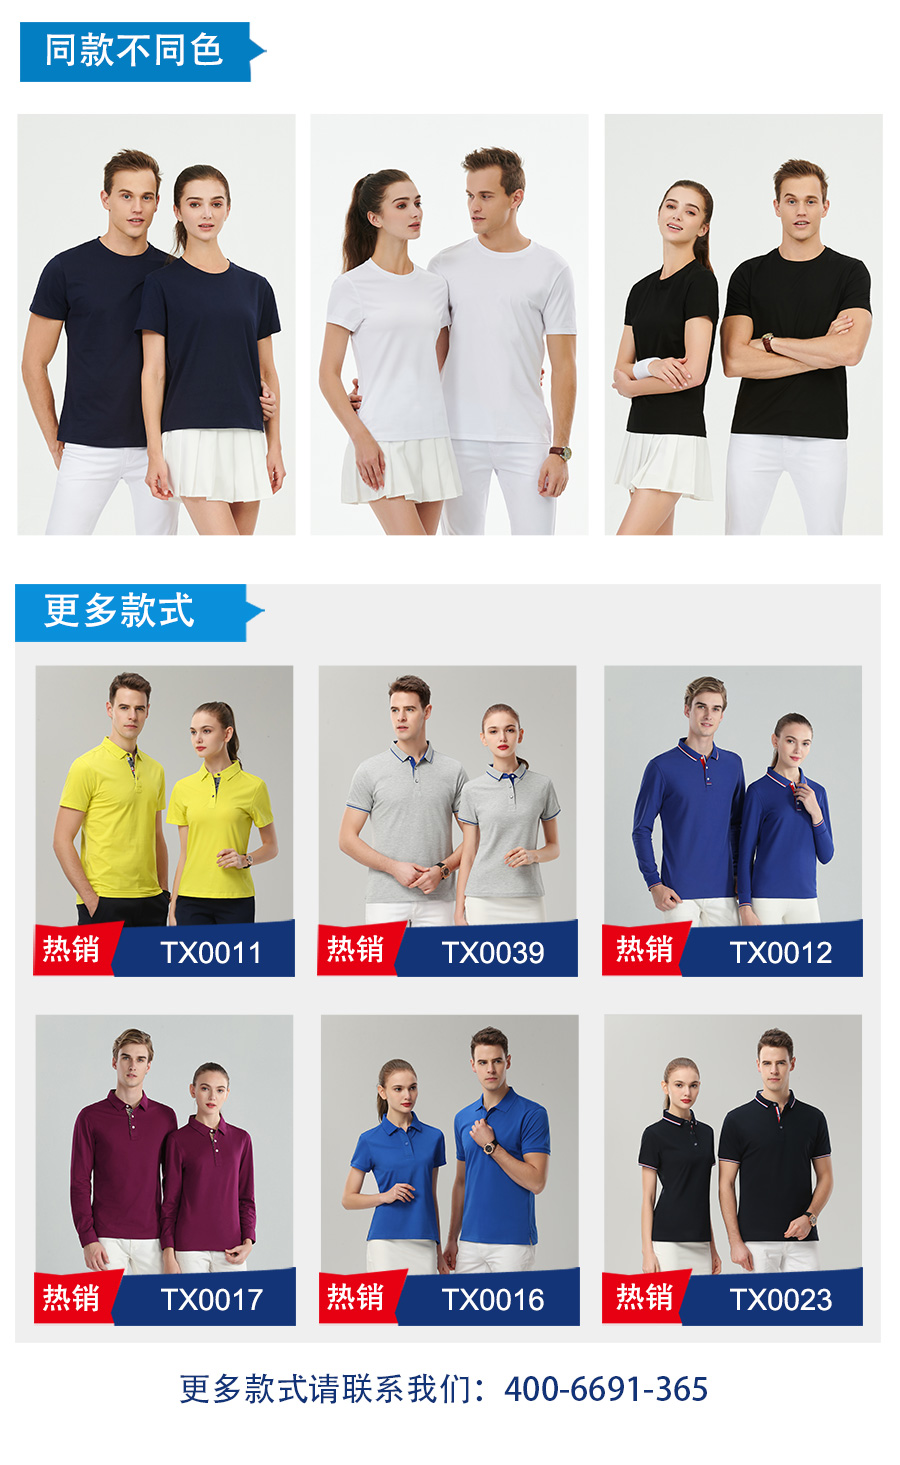 企业文化衫同款不同色.jpg